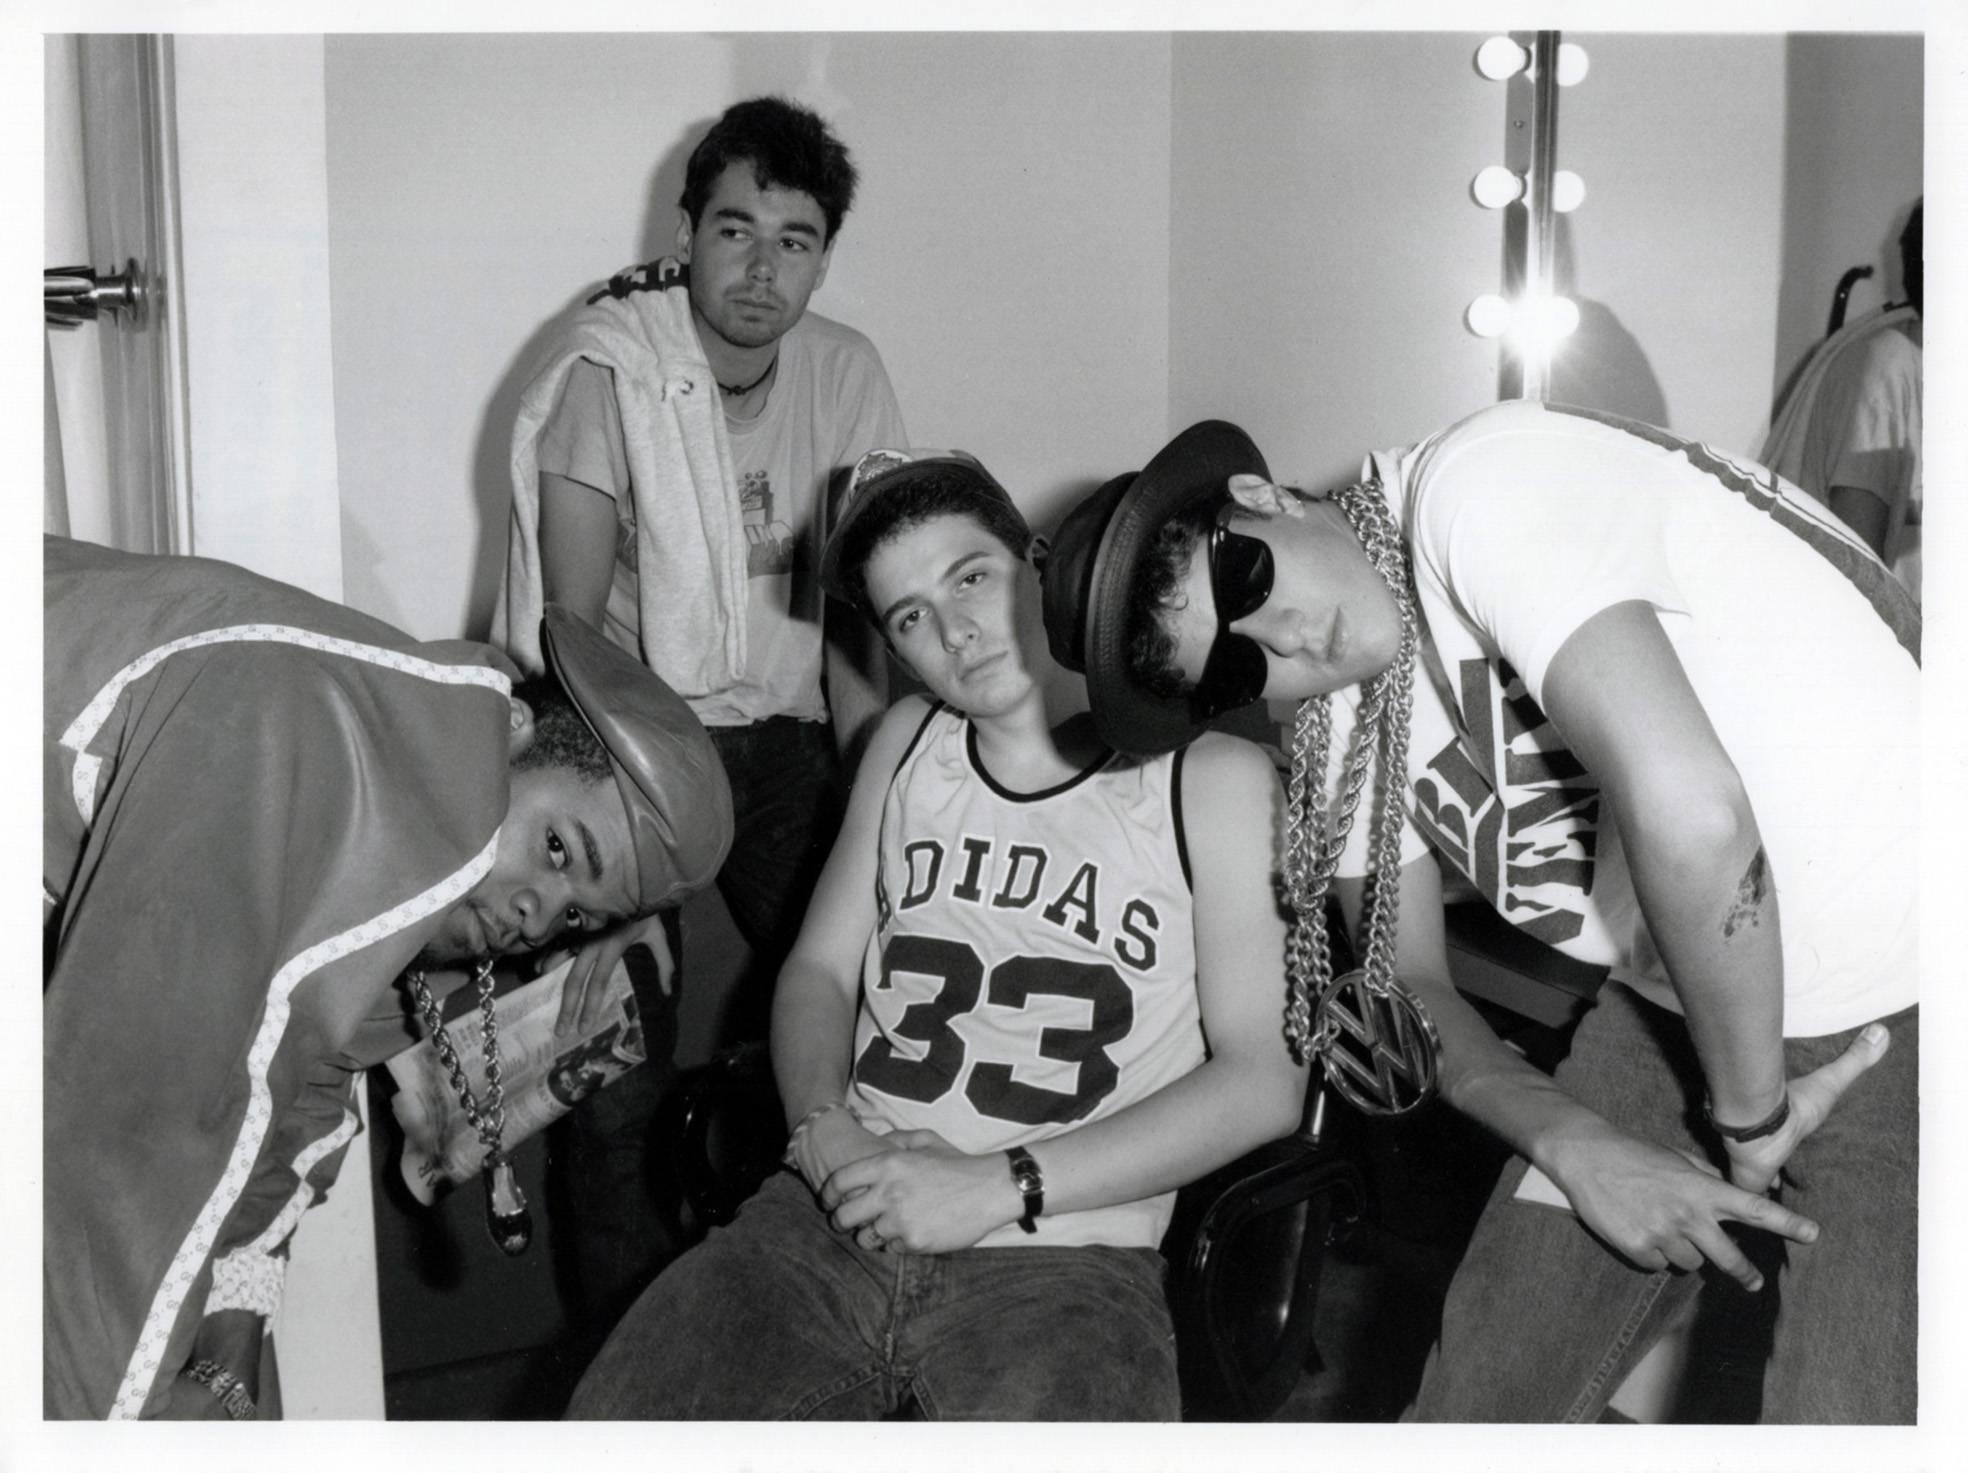 Unknown Portrait Photograph - Vintage Beastie Boys Photograph (1980s Hip Hop photography)